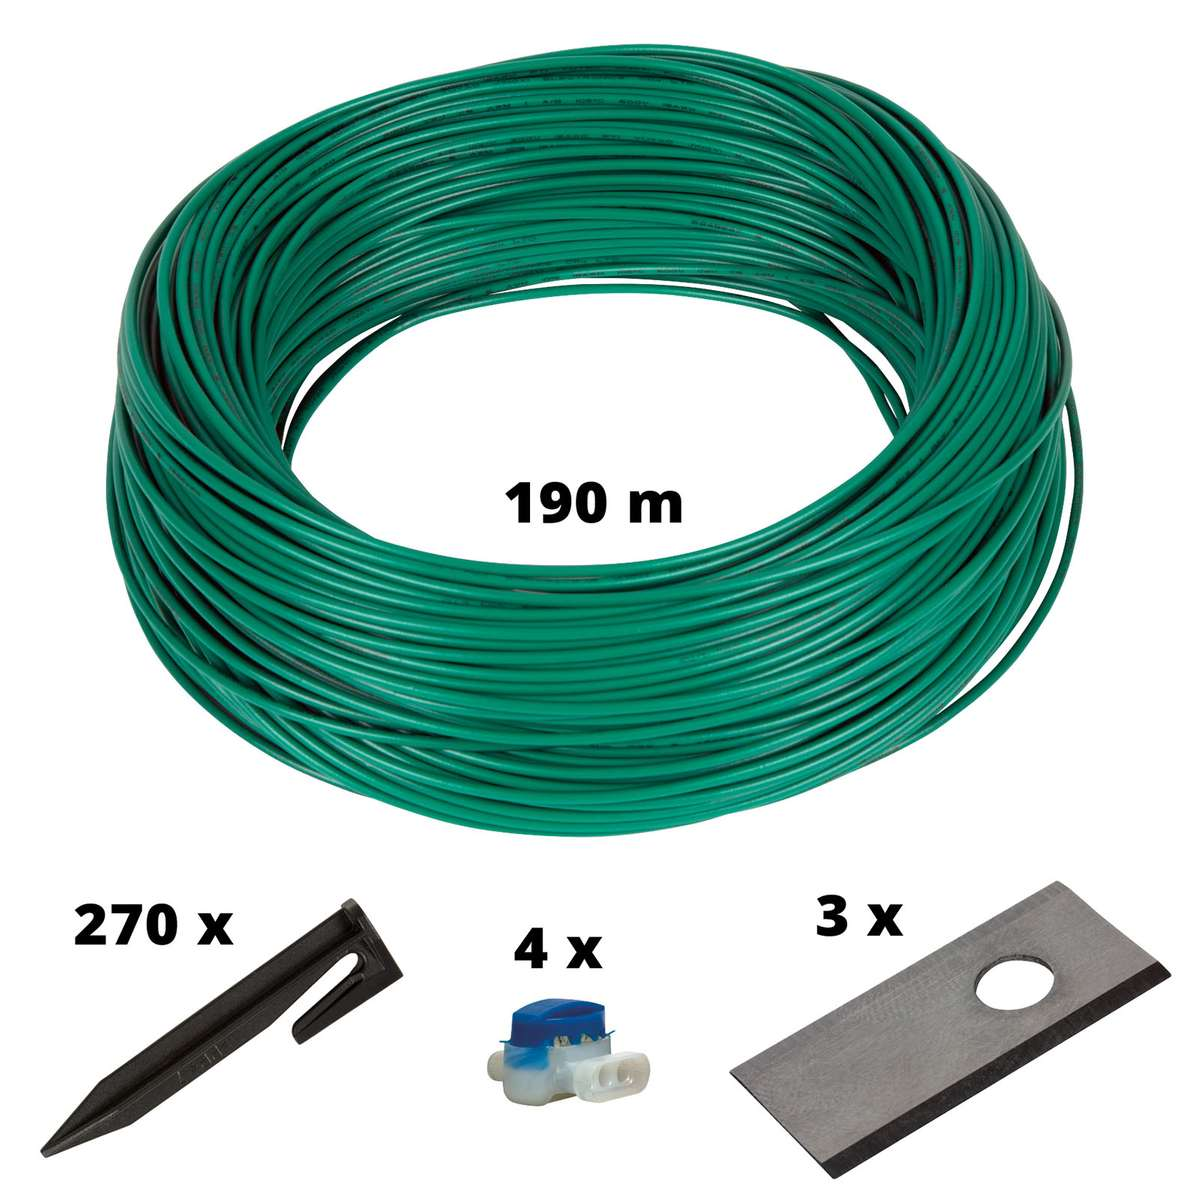 EINHELL Cable Mehrfarbig Mähroboter-Zubehör, Kit 900m2